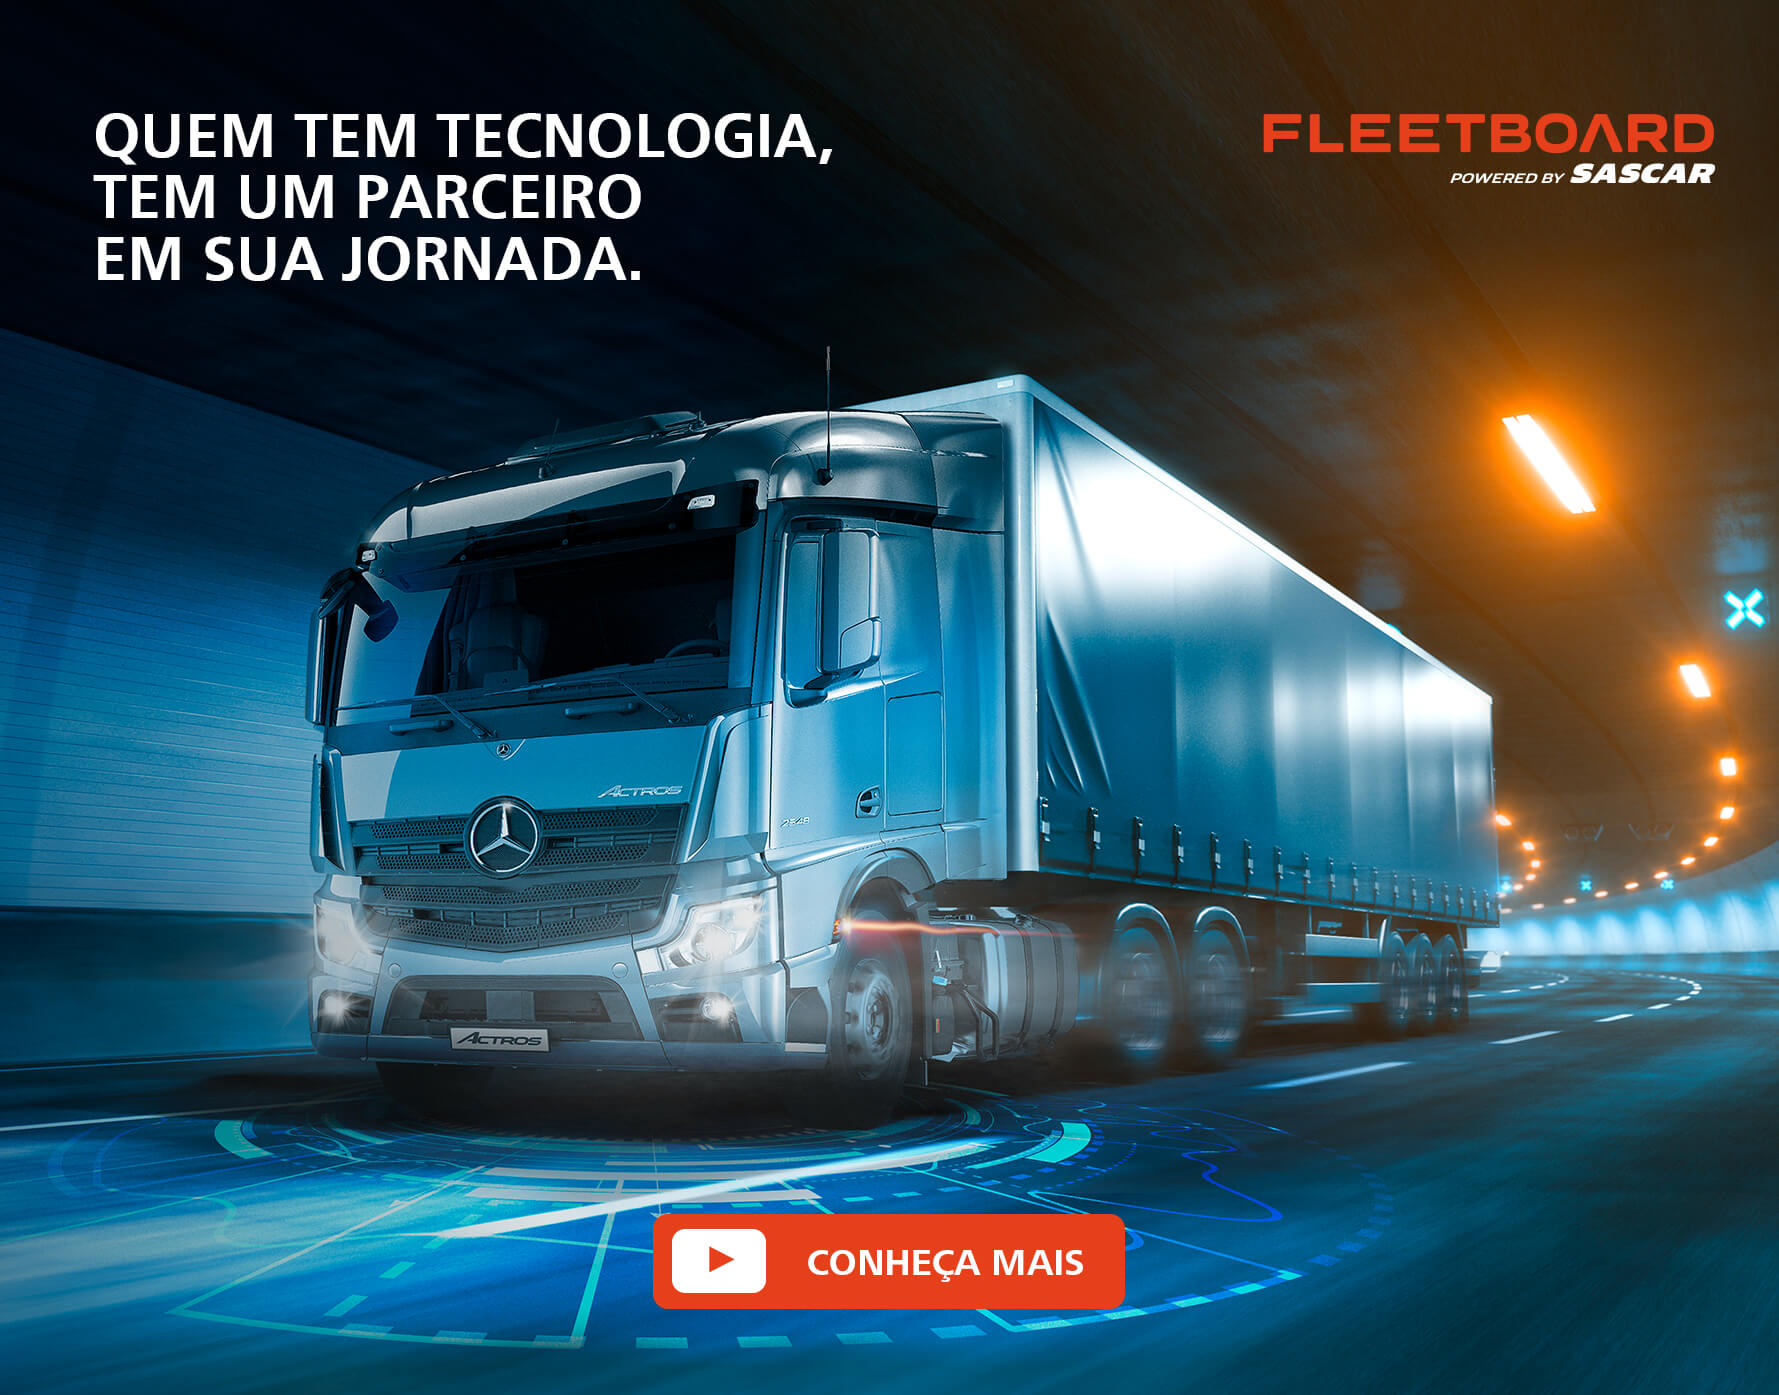 Foto de um caminhão com a frase "Quem tem tecnologia, tem um parceiro em sua jornada".